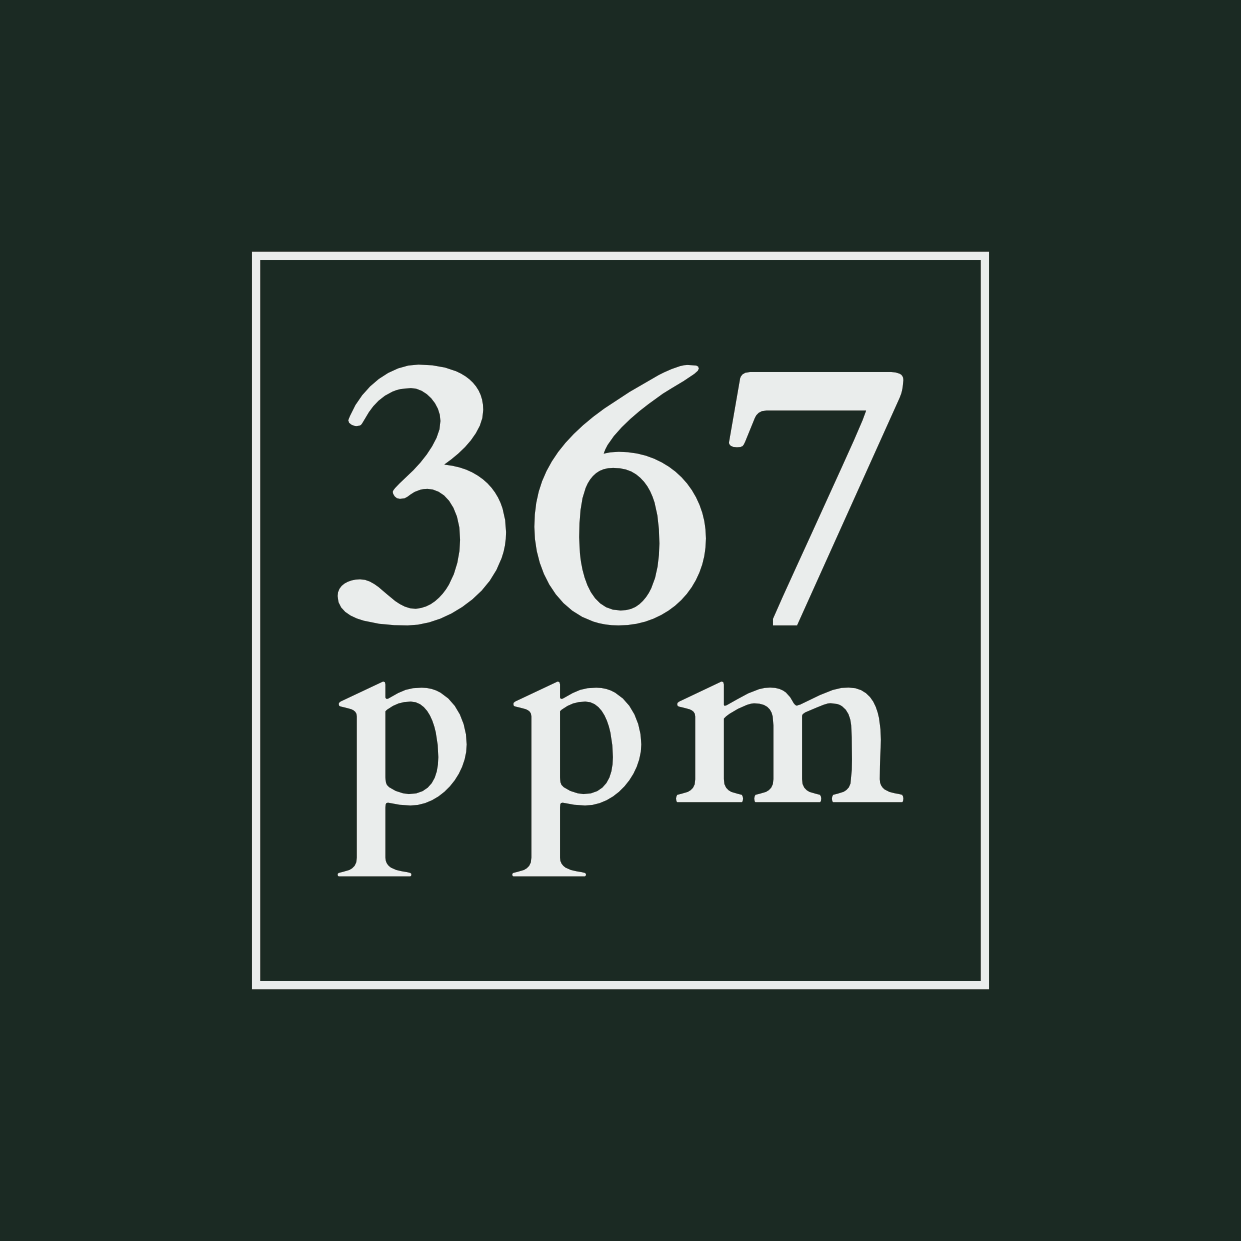 Logo 367ppm